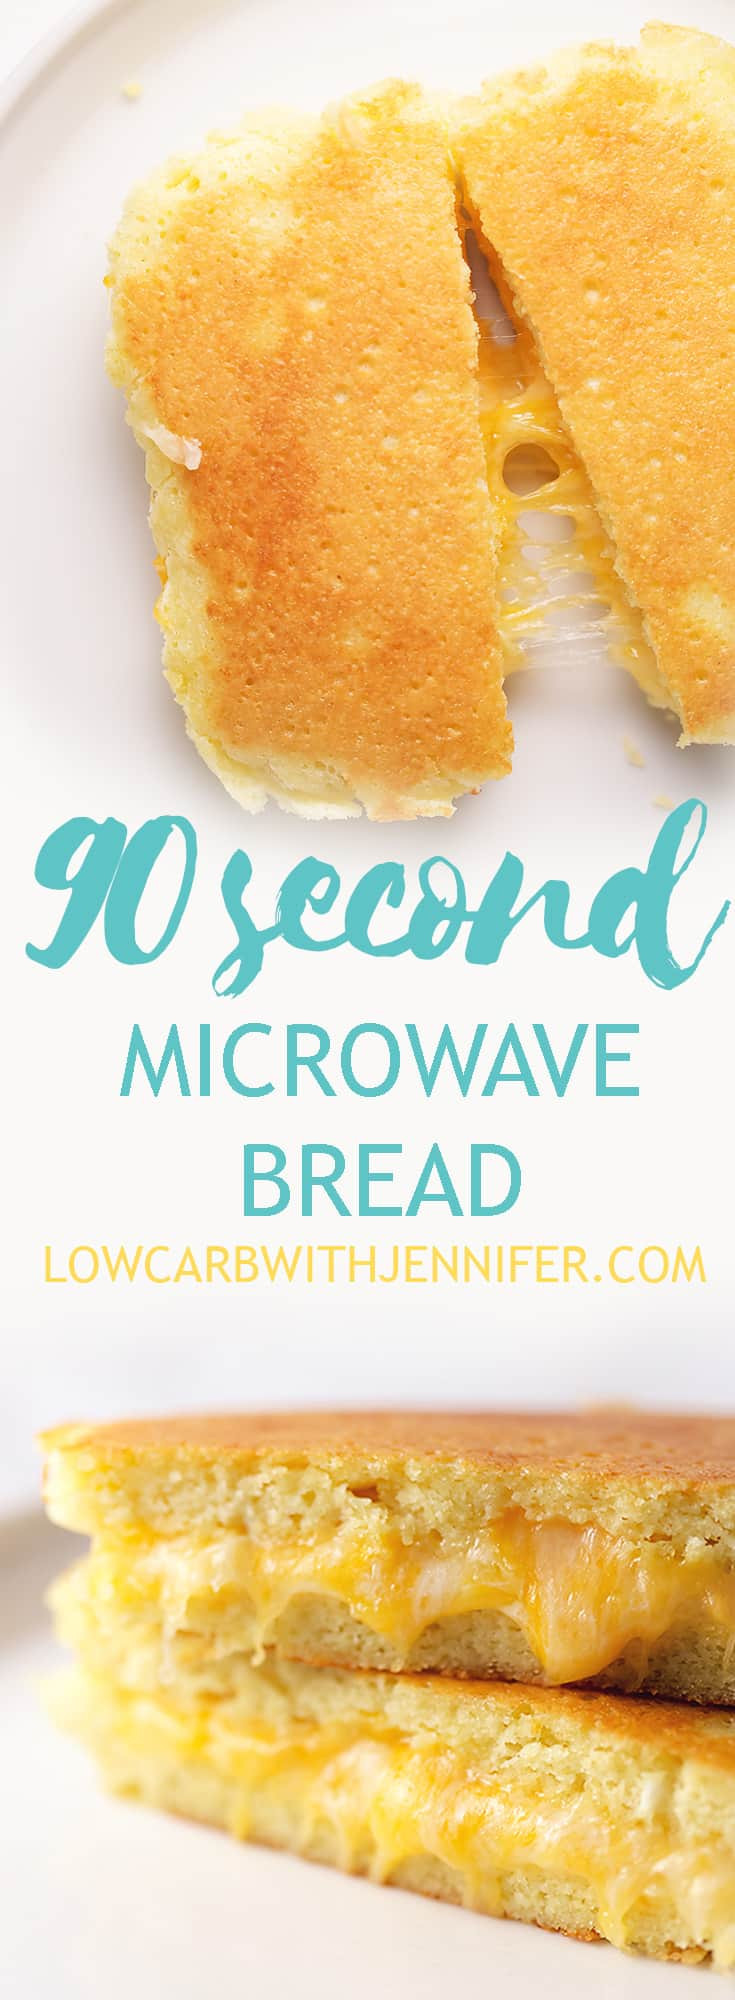 90 Second Keto Bread Coconut Flour And Almond Flour
 90 Second Microwave Bread with Almond flour or Coconut